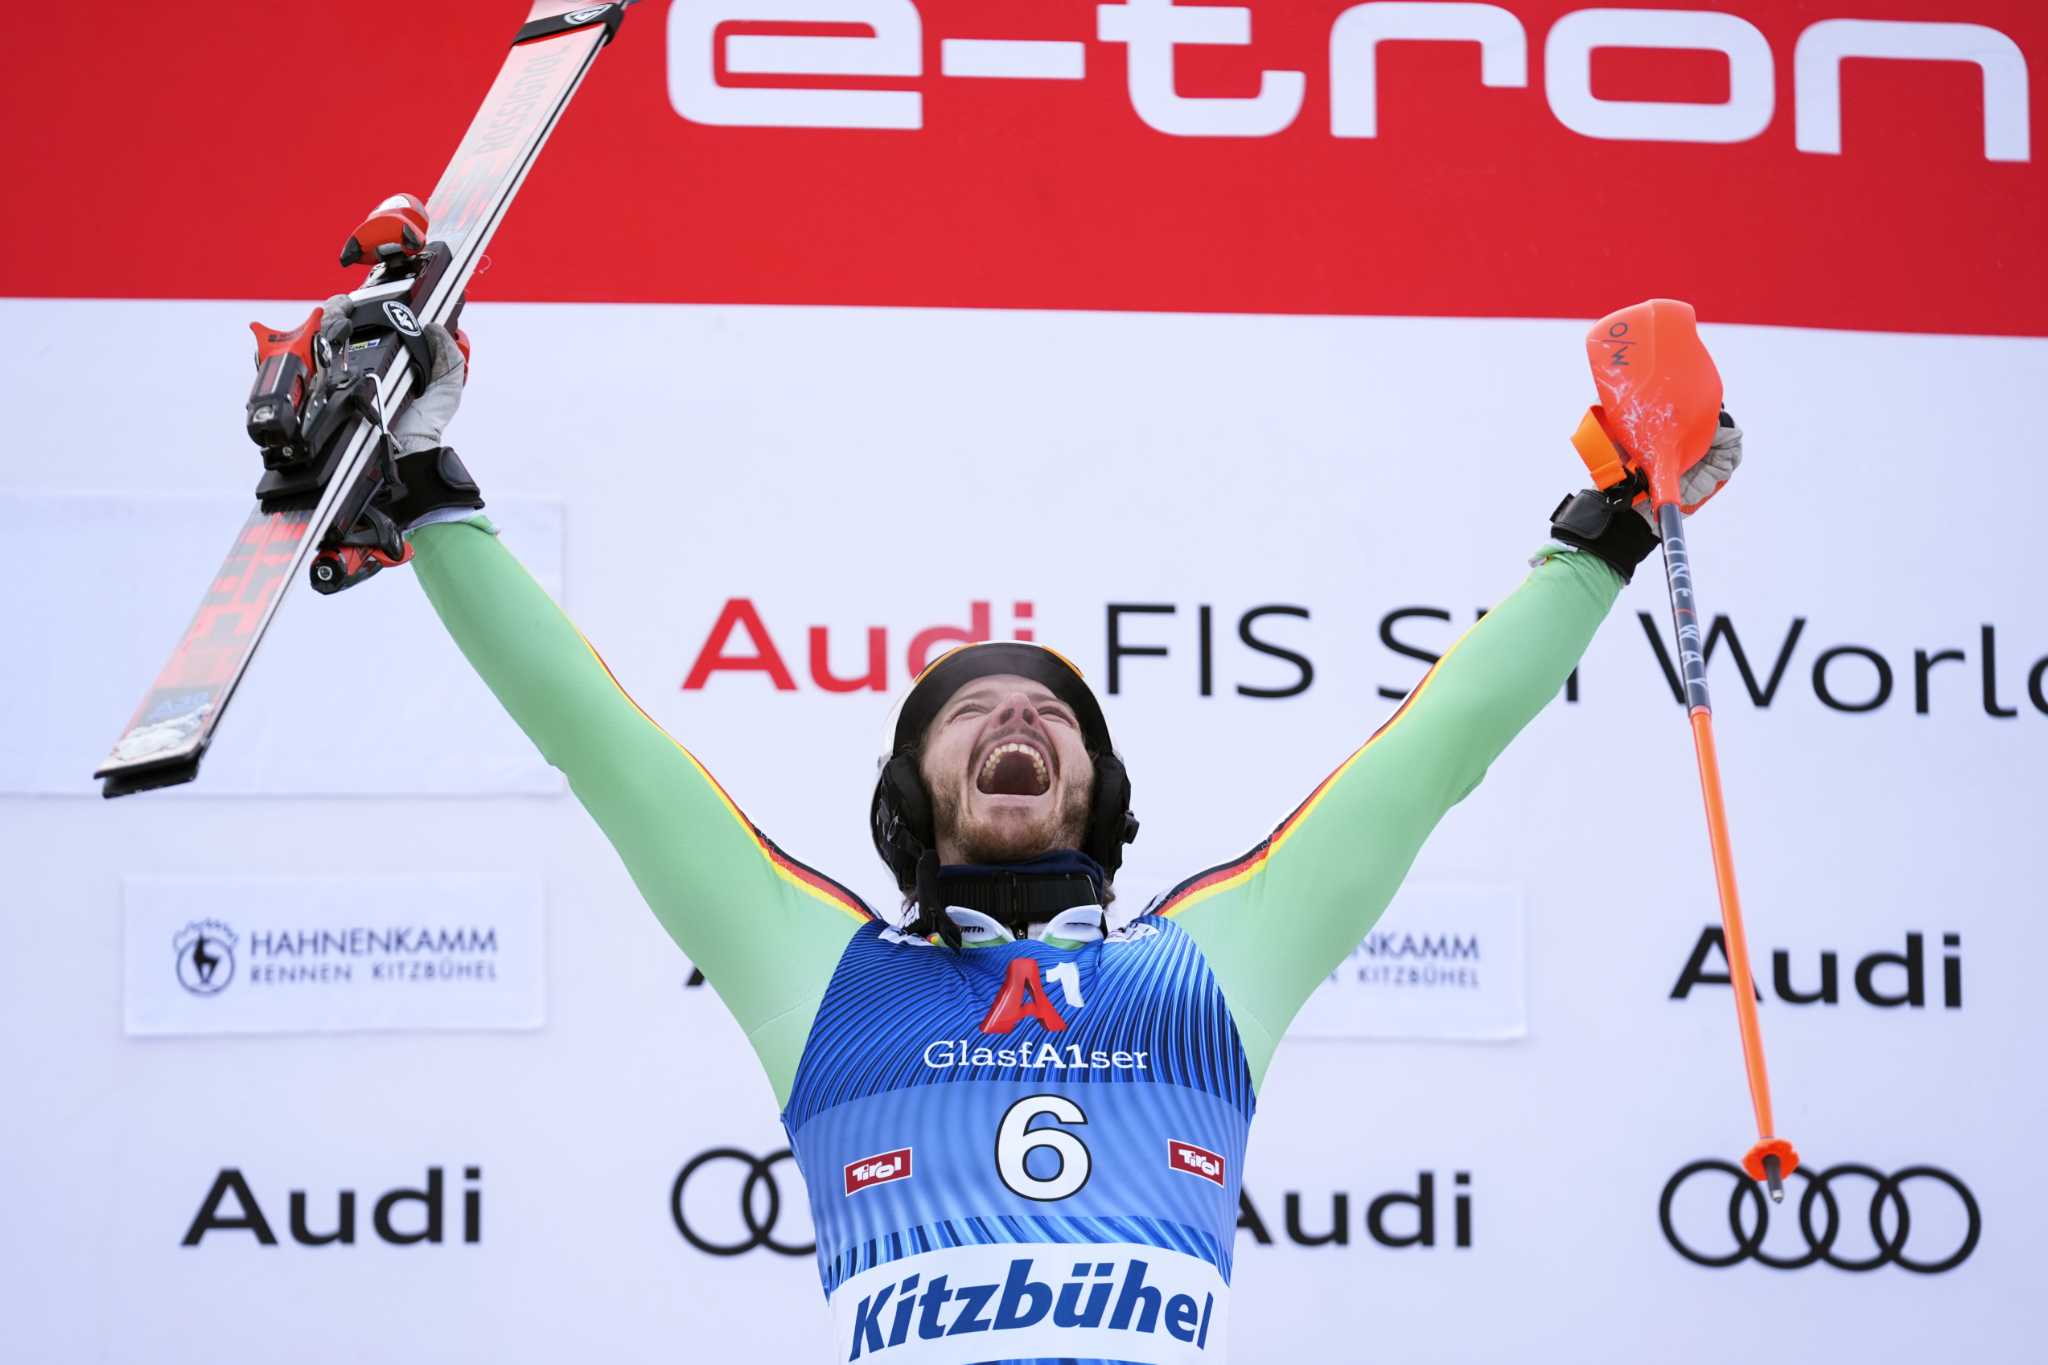 Der Deutsche Linus Strasser ist Schnellster im Kitzbüheler Slalomlauf und gewinnt das 1. Rennen auf der Kinderstrecke